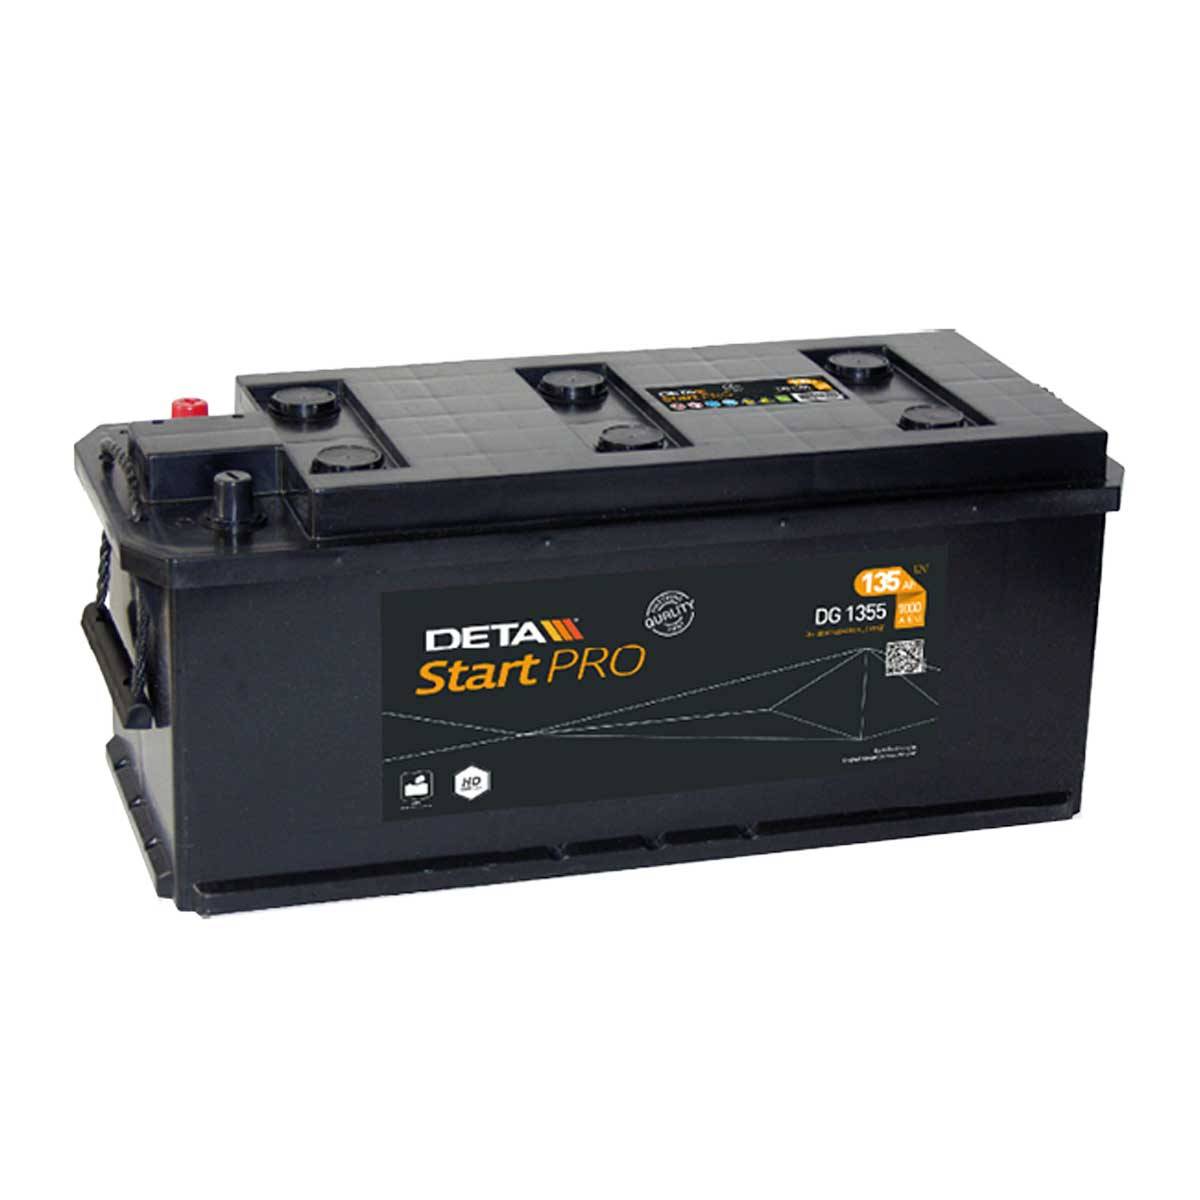 DETA DG1355 Start Pro 12V 135Ah 1000A Truck Battery